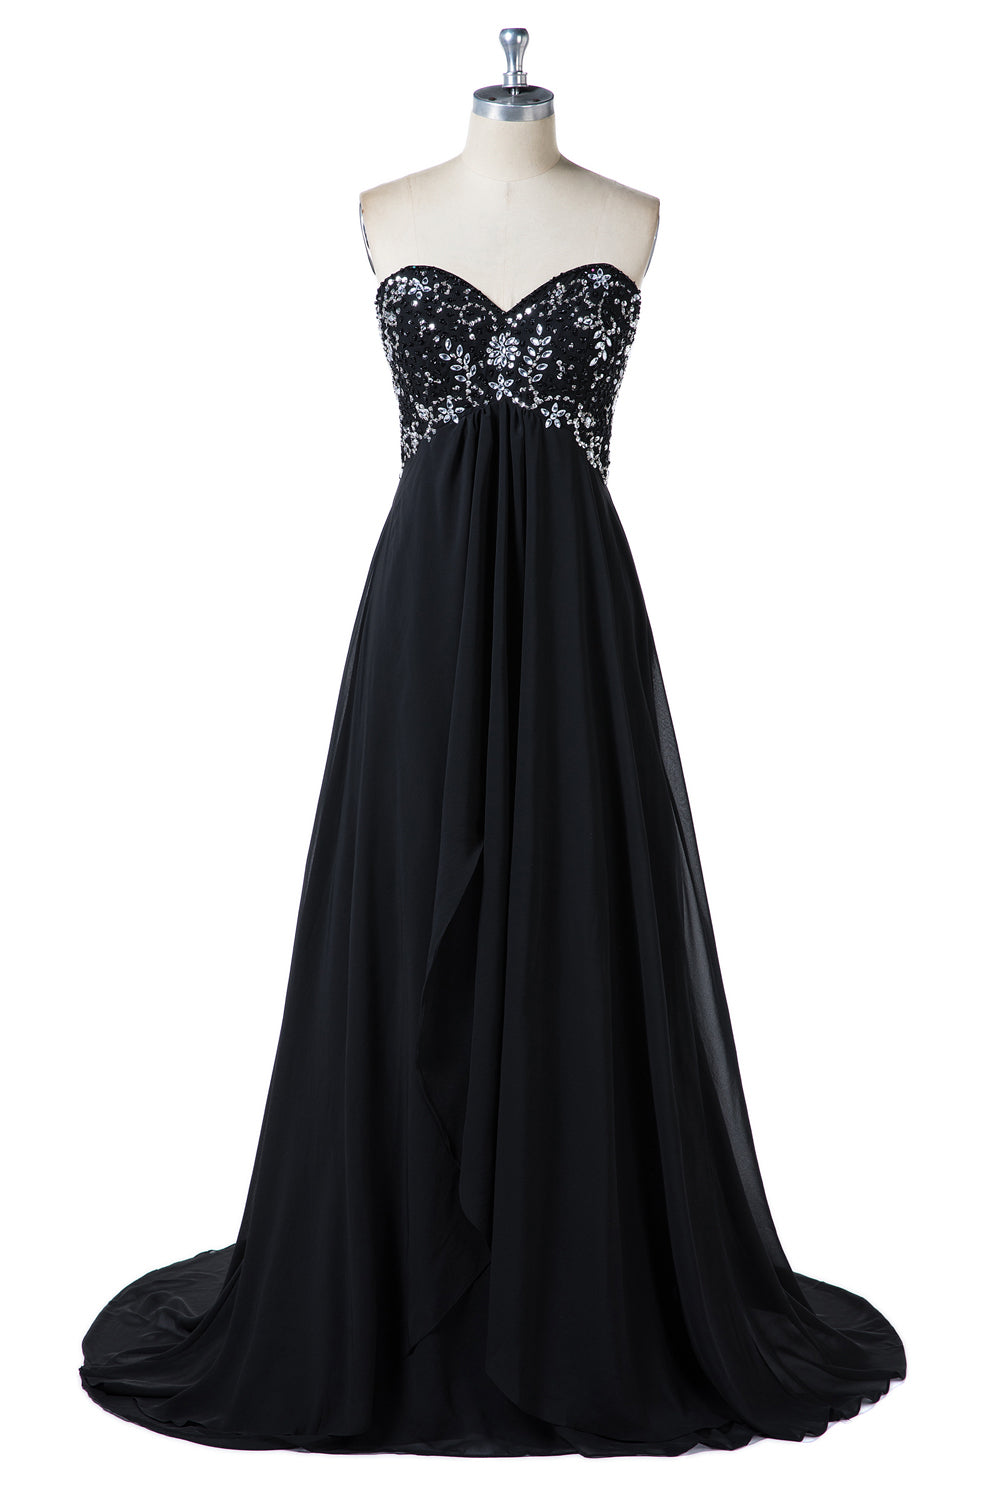 Black Sweetheart Strapless Beading Formal Dresses